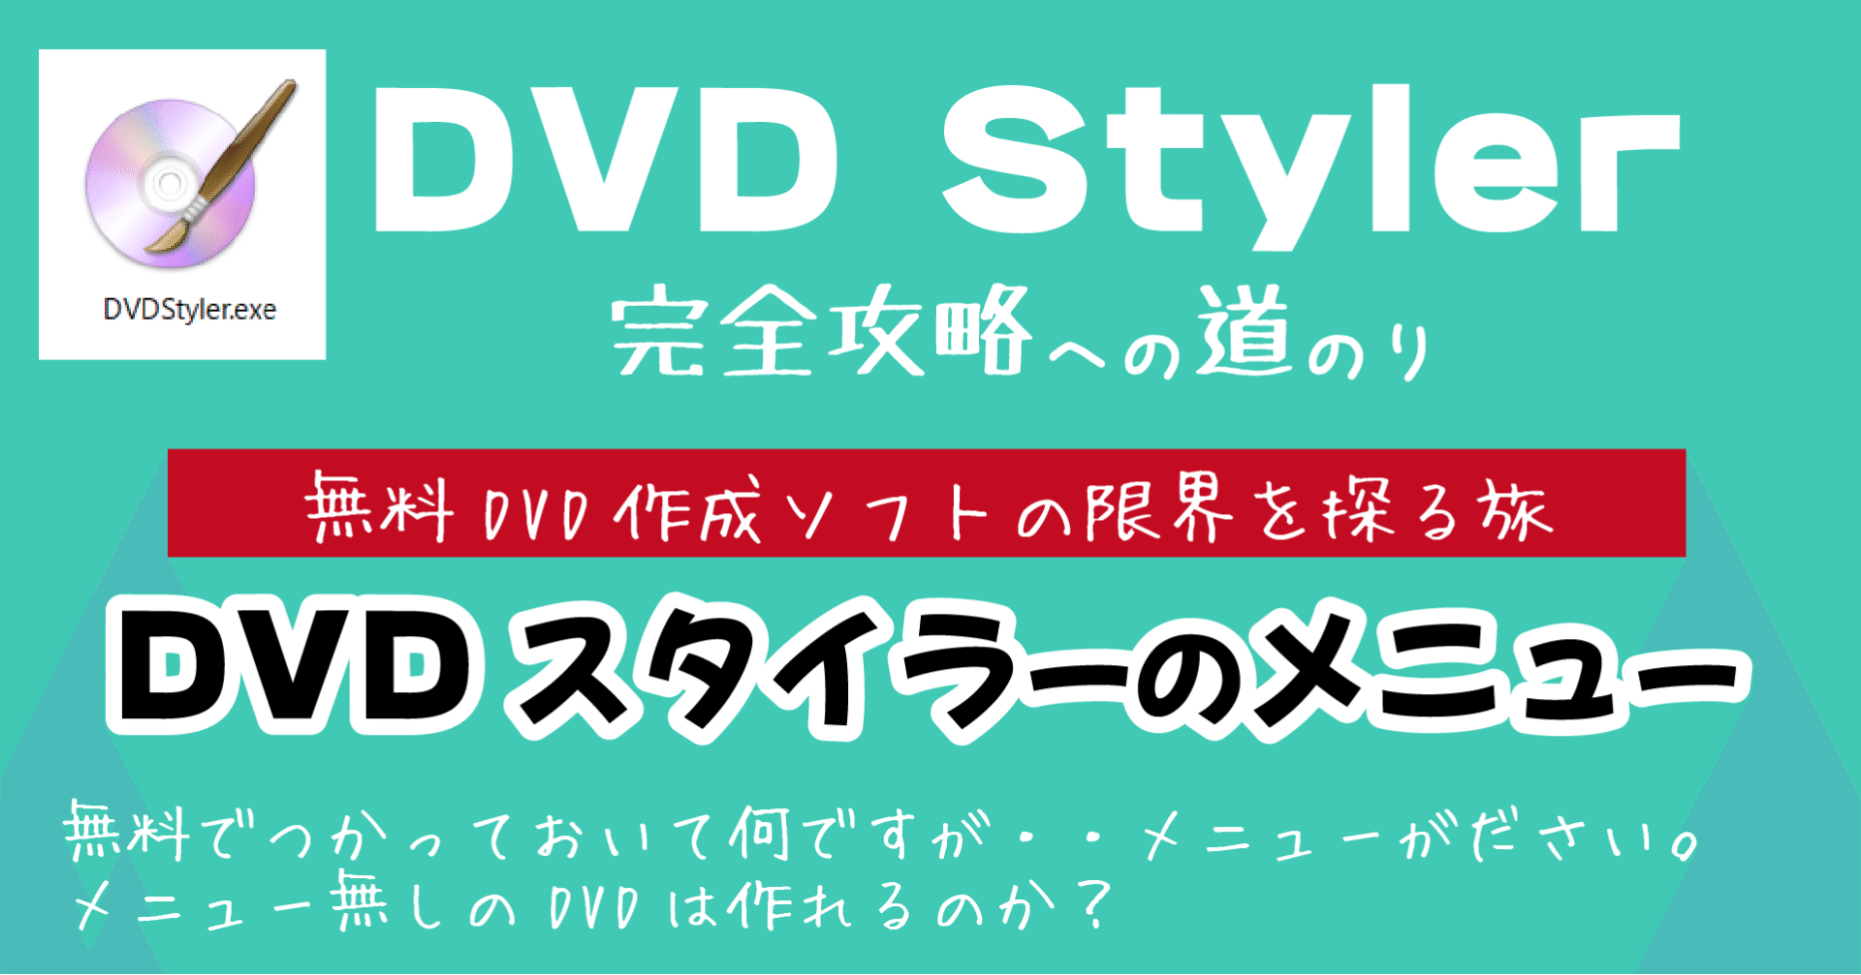 Dvd styler 使い方